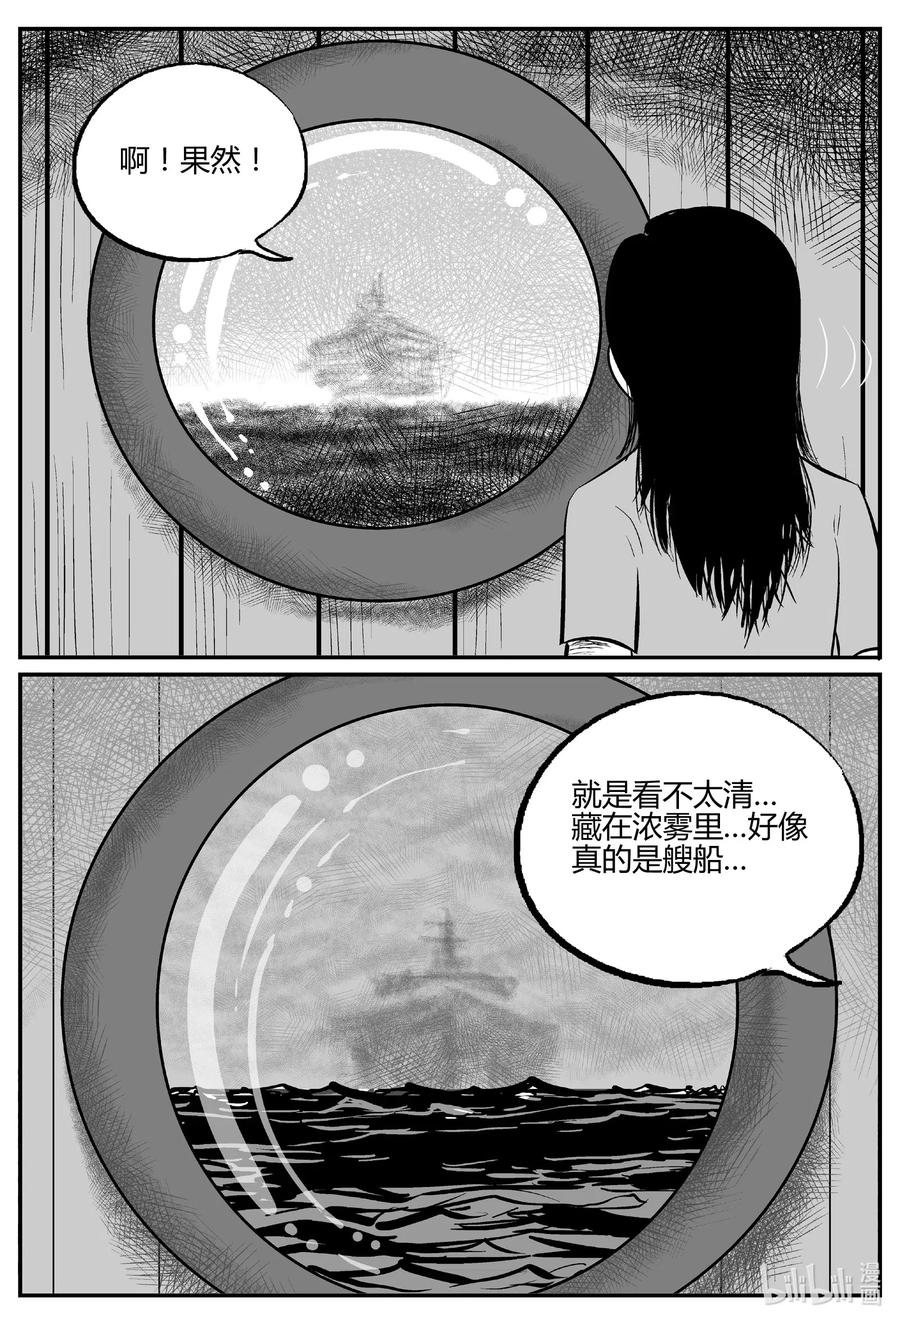 小智怪談 - 519 幽靈船 - 5